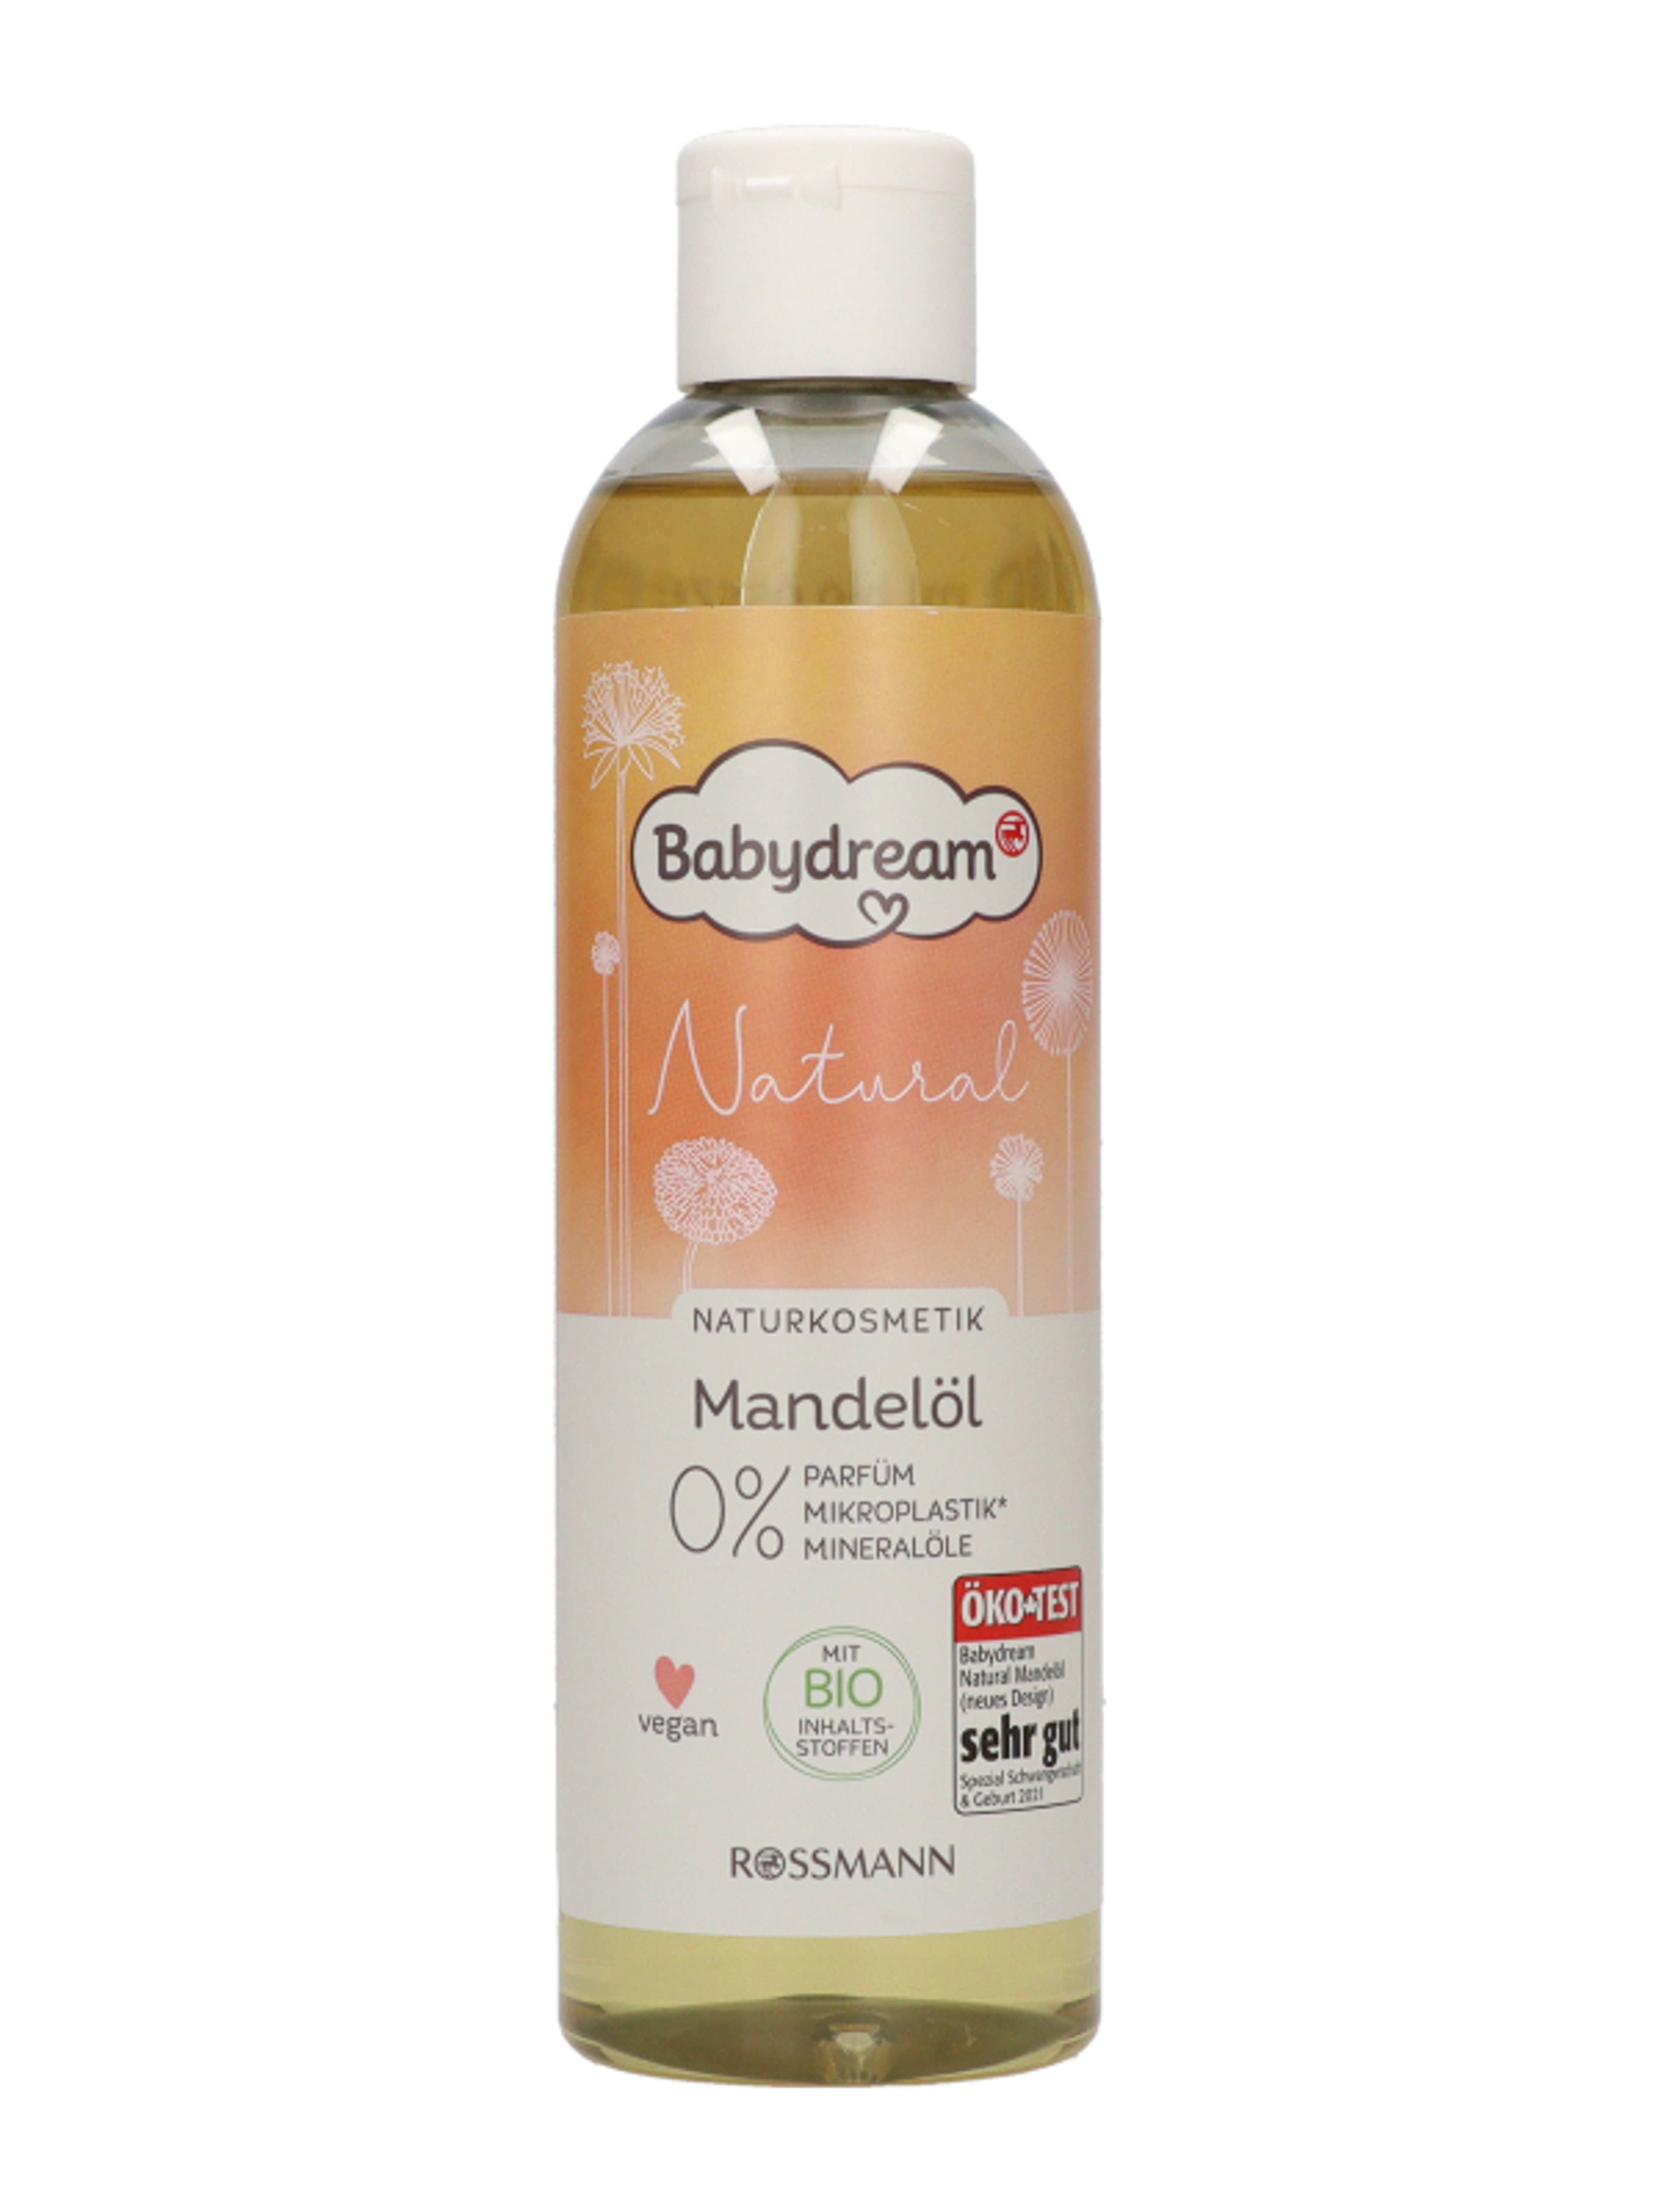 Babydream Natural mandulaolaj - 250 ml-2